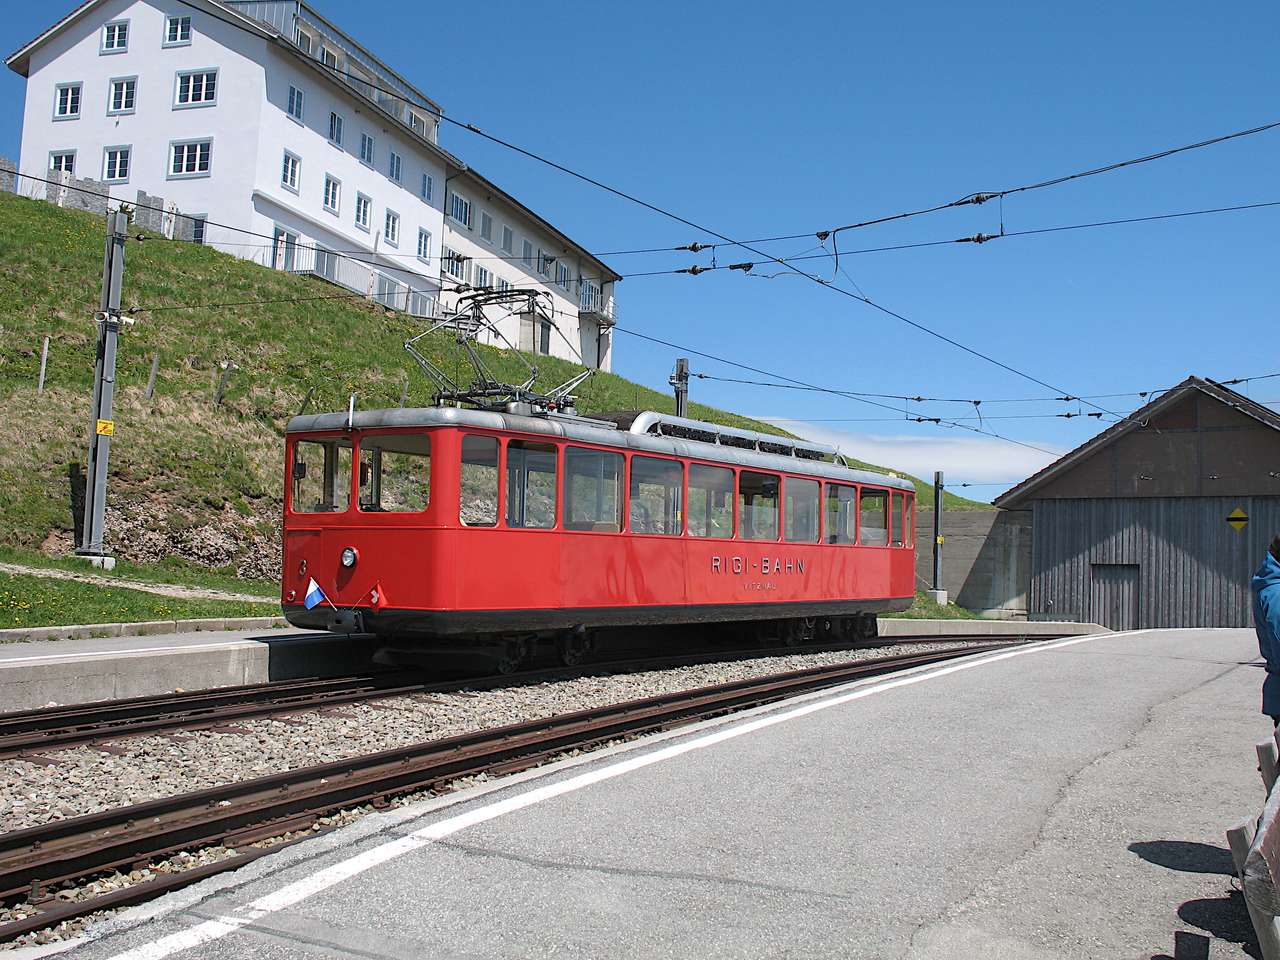 Ригінська залізниця, Швейцарія пазл онлайн